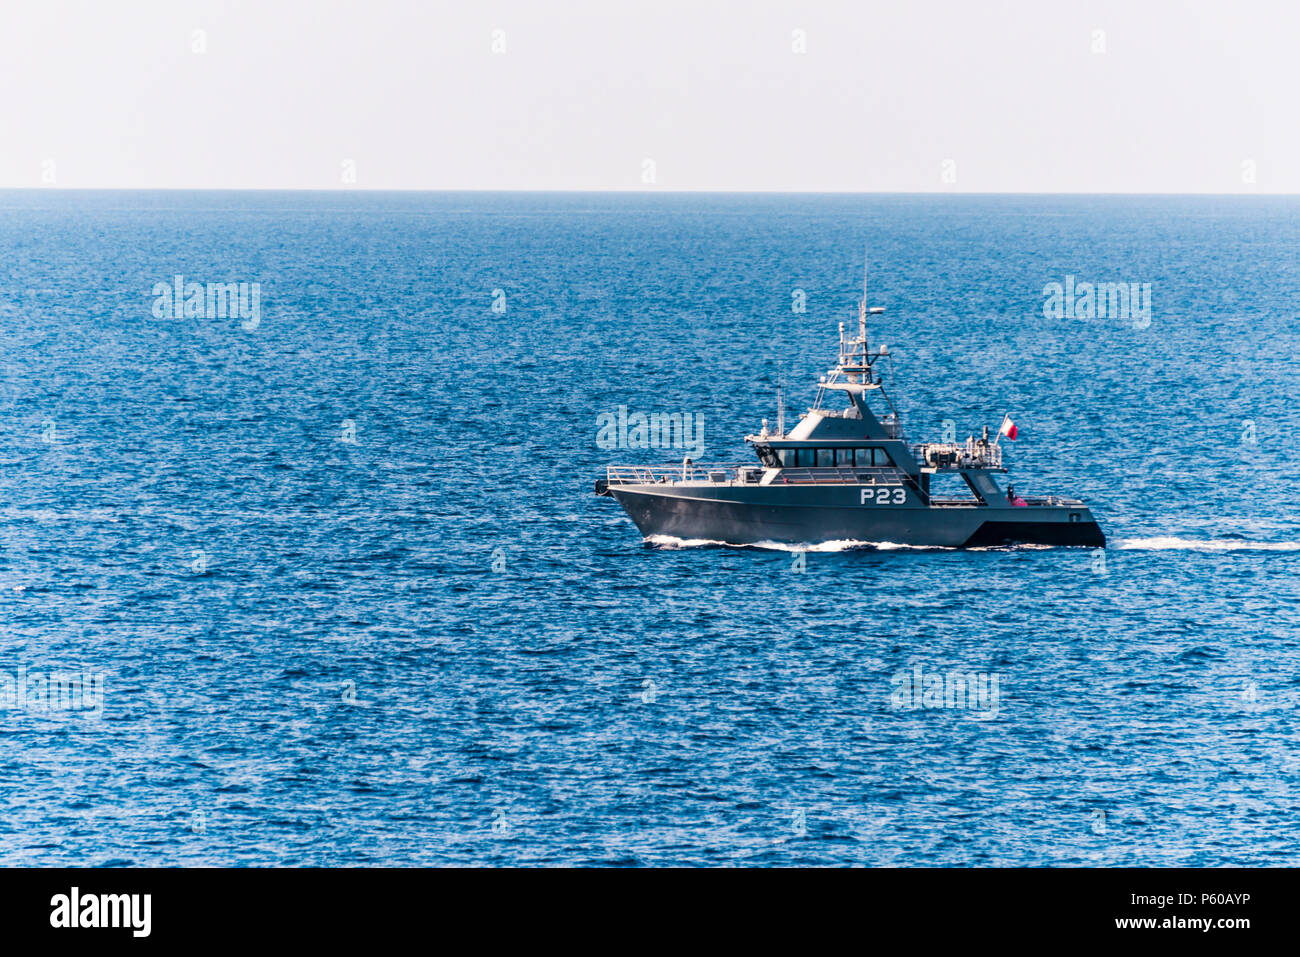 P23, una lancha patrullera offshore clase Austal pertenecientes a las Fuerzas Armadas de Malta, patroling el mar alrededor de Gozo. Foto de stock